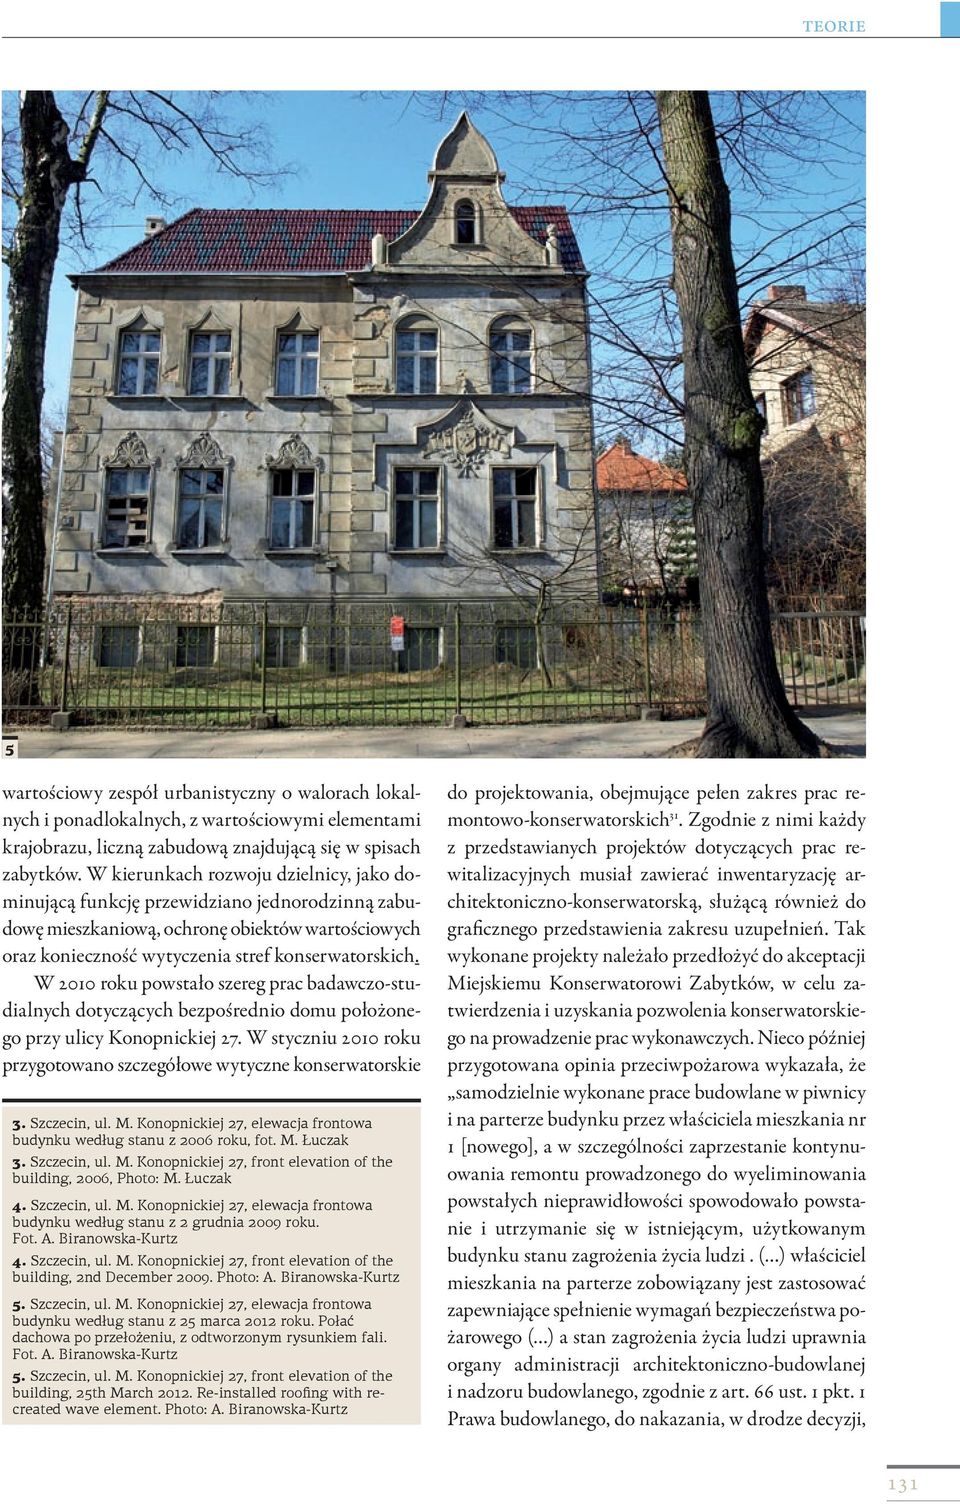 W 2010 roku powstało szereg prac badawczo-studialnych dotyczących bezpośrednio domu położonego przy ulicy Konopnickiej 27. W styczniu 2010 roku przygotowano szczegółowe wytyczne konserwatorskie 3.